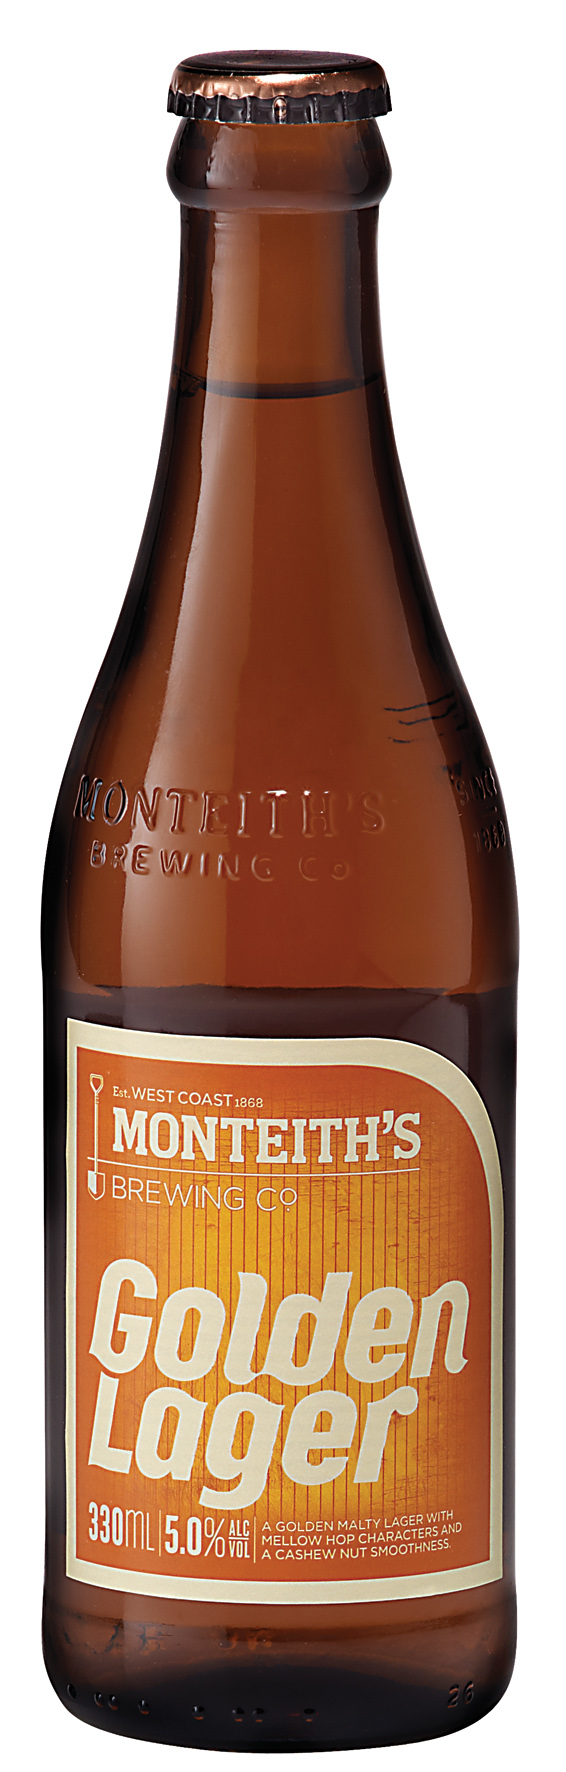 Monteith's Golden Lager Bottle